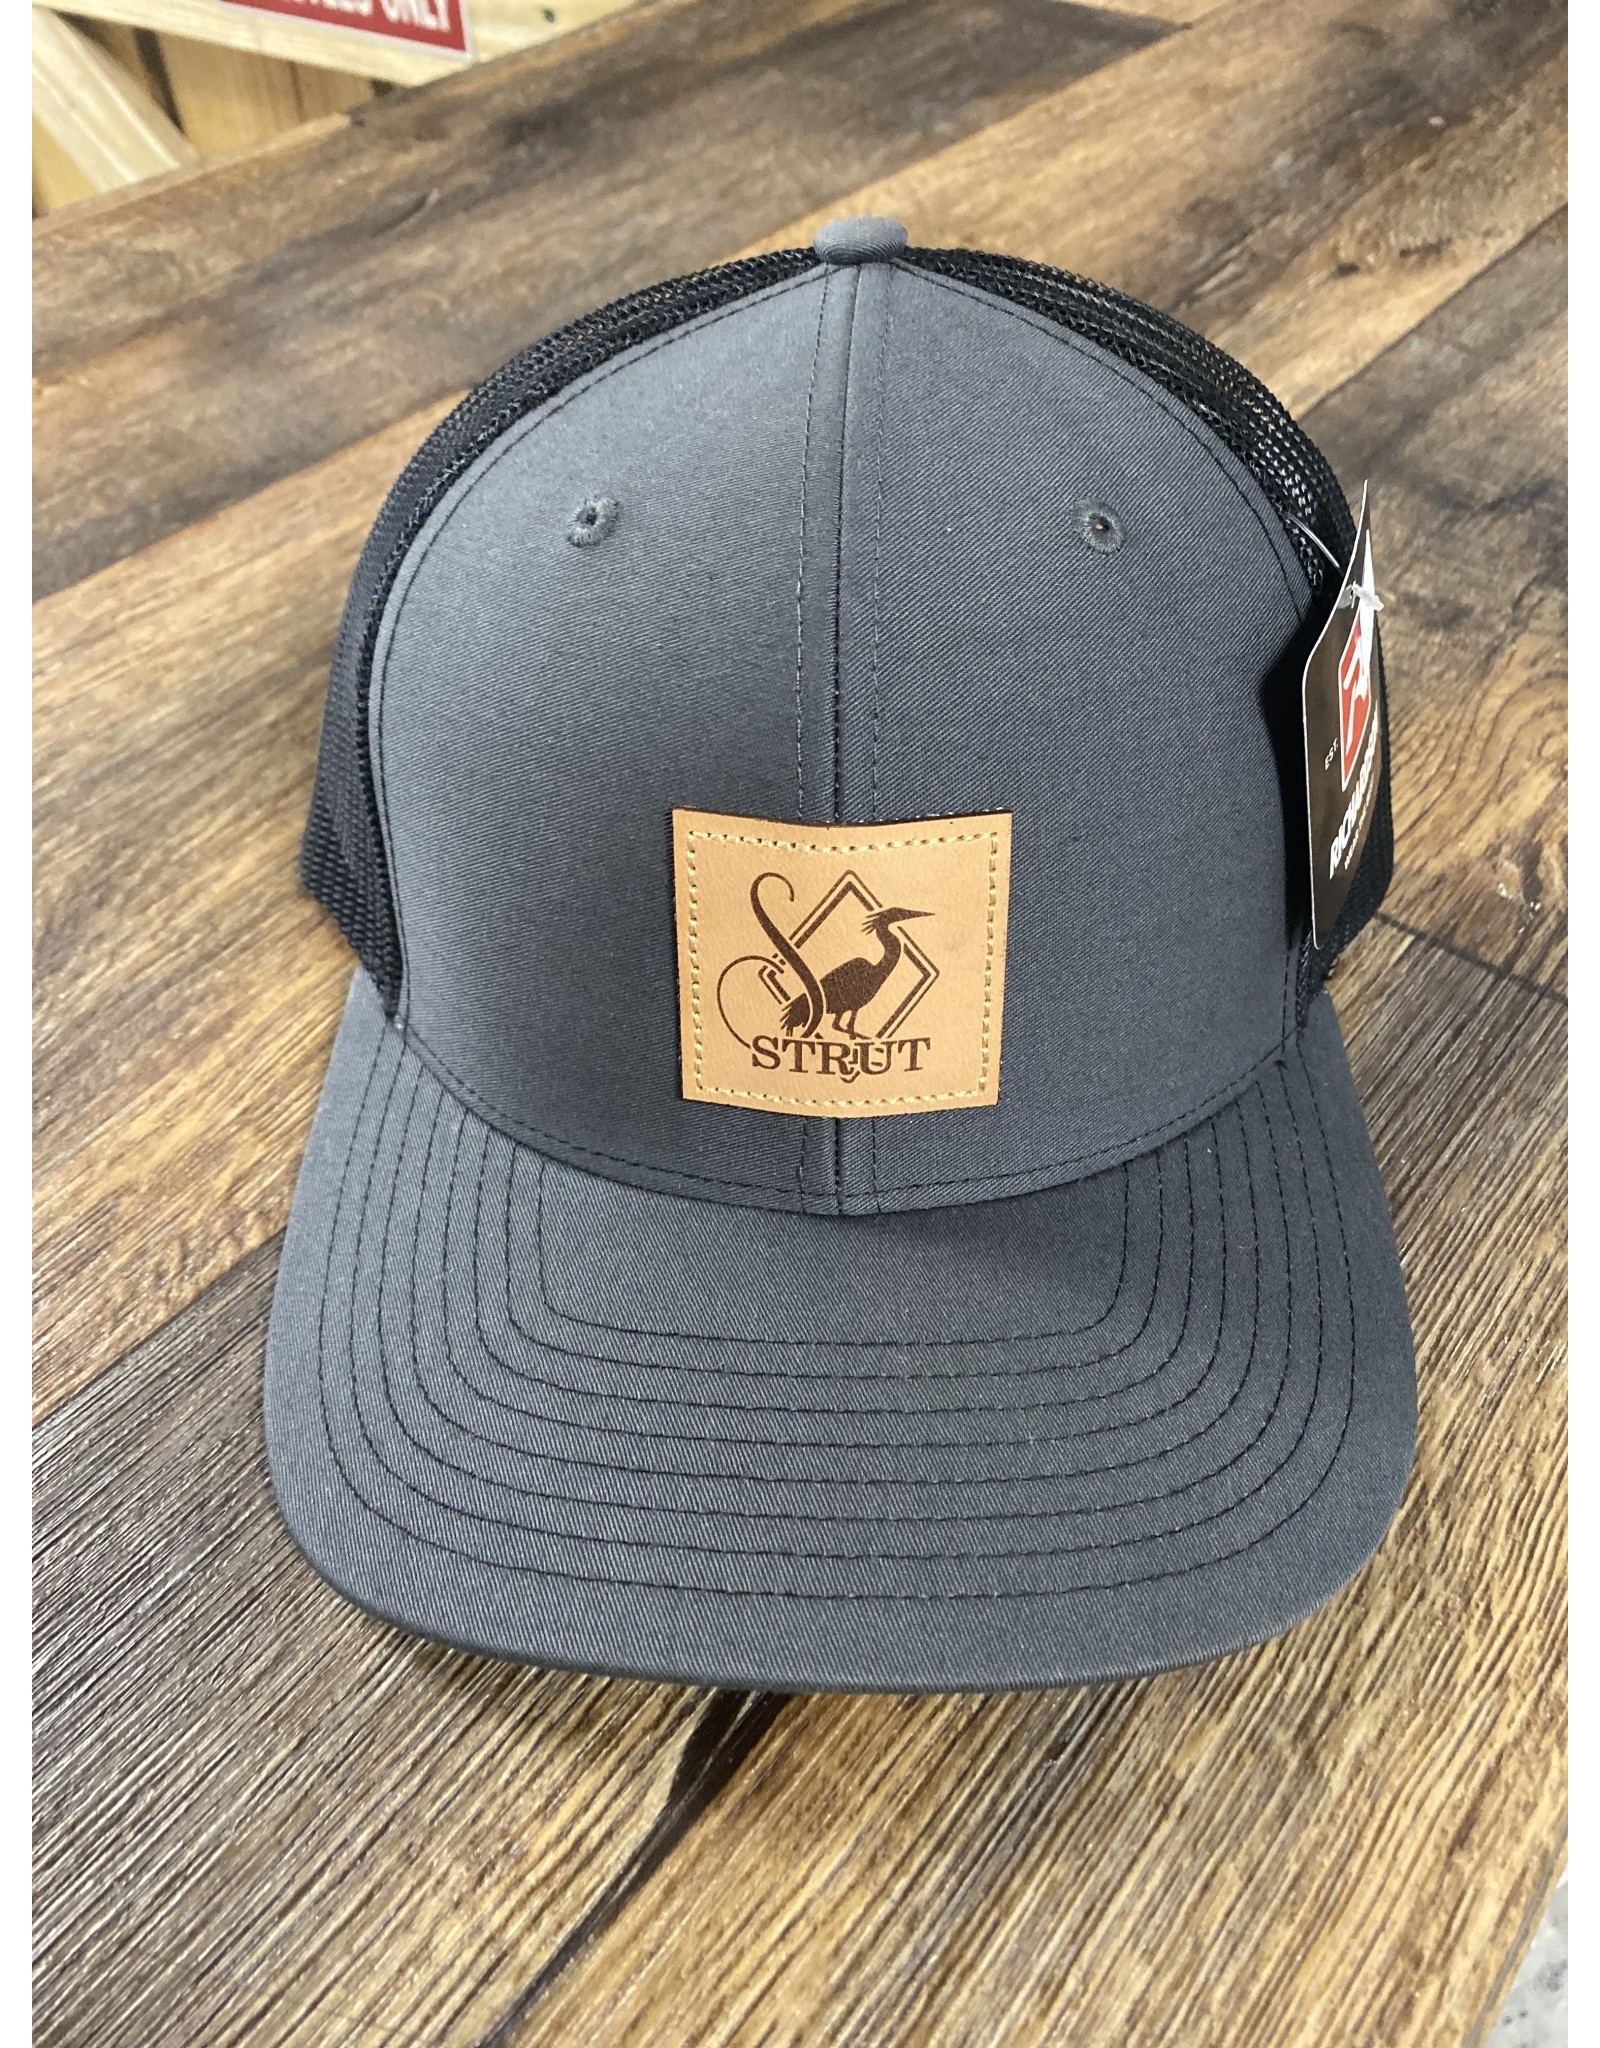 Southern Strut Hat – Southern Strut Brand